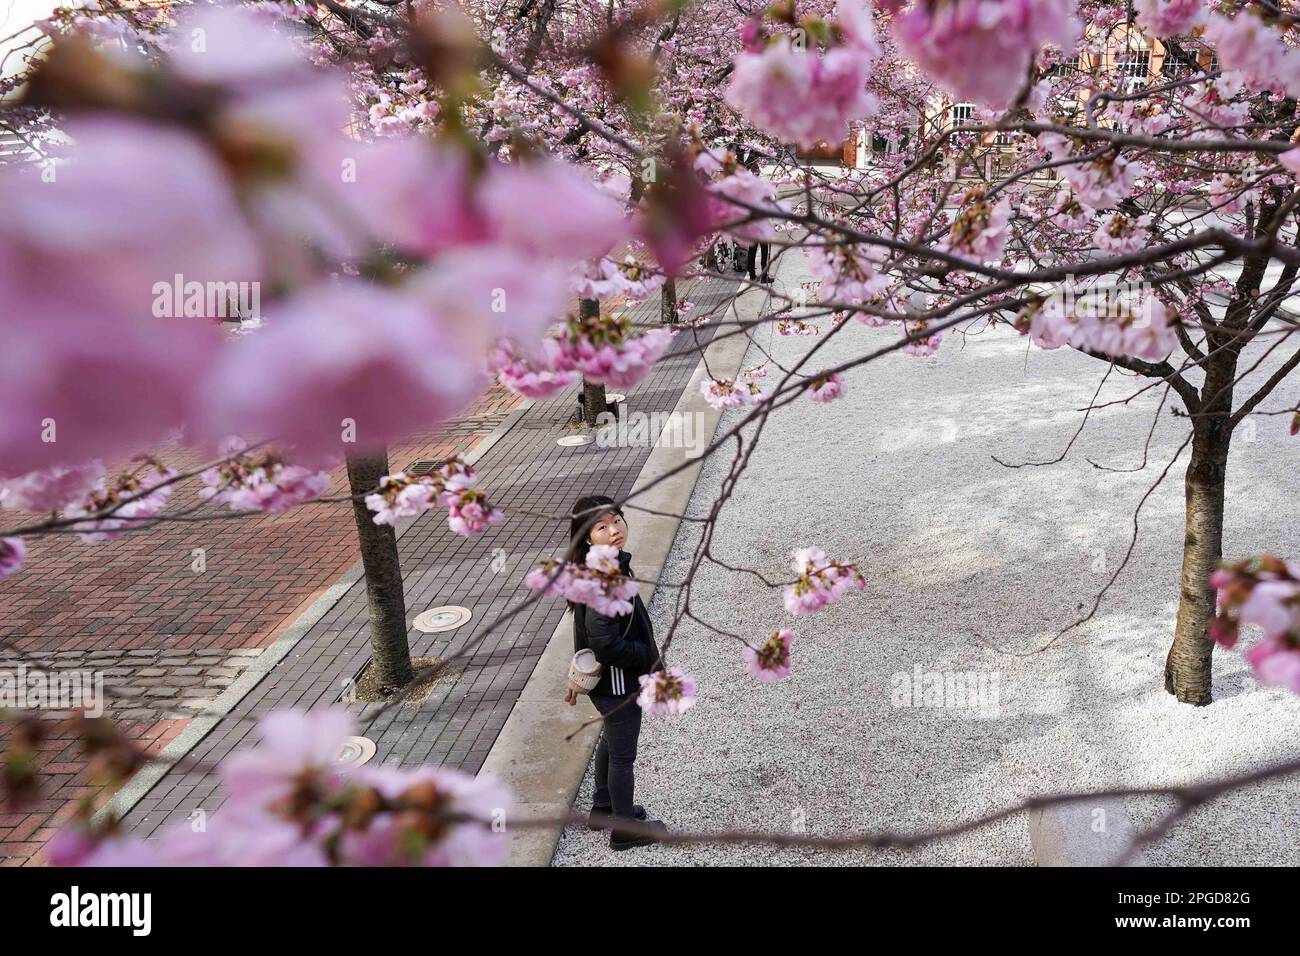 Una donna osserva gli alberi in fiore vicino a Oozells Square nel centro di Birmingham. Data immagine: Mercoledì 22 marzo 2023. Foto Stock